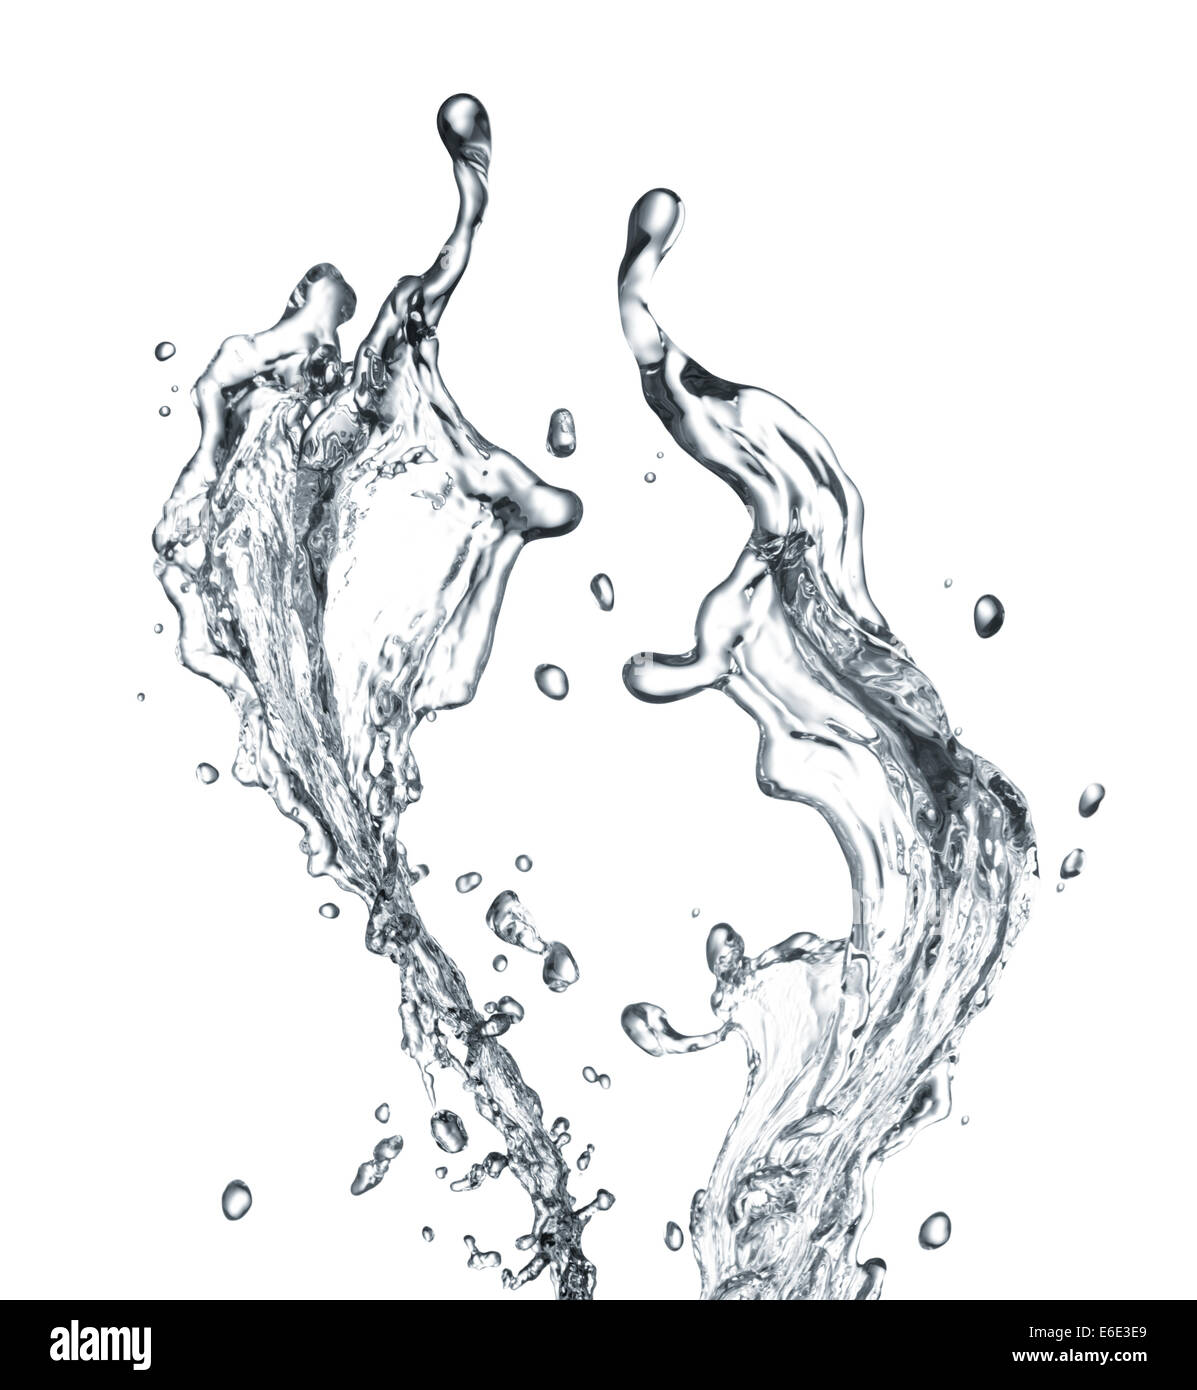 Wasser oder Flüssigkeit Spritzen vor weißem Hintergrund Stockfoto